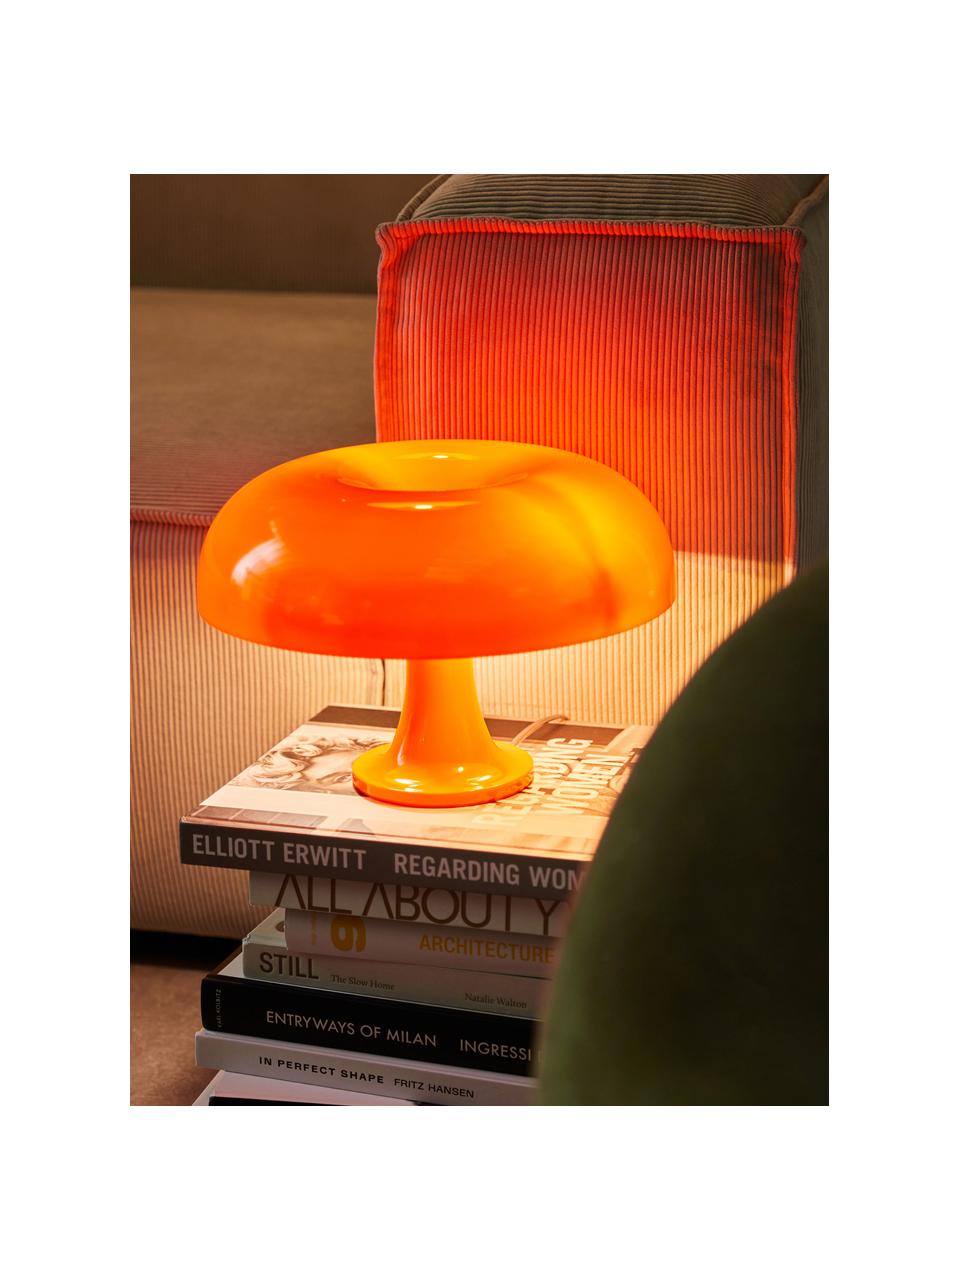 Petite lampe à poser Nessino, Orange, Ø 32 x haut. 22 cm